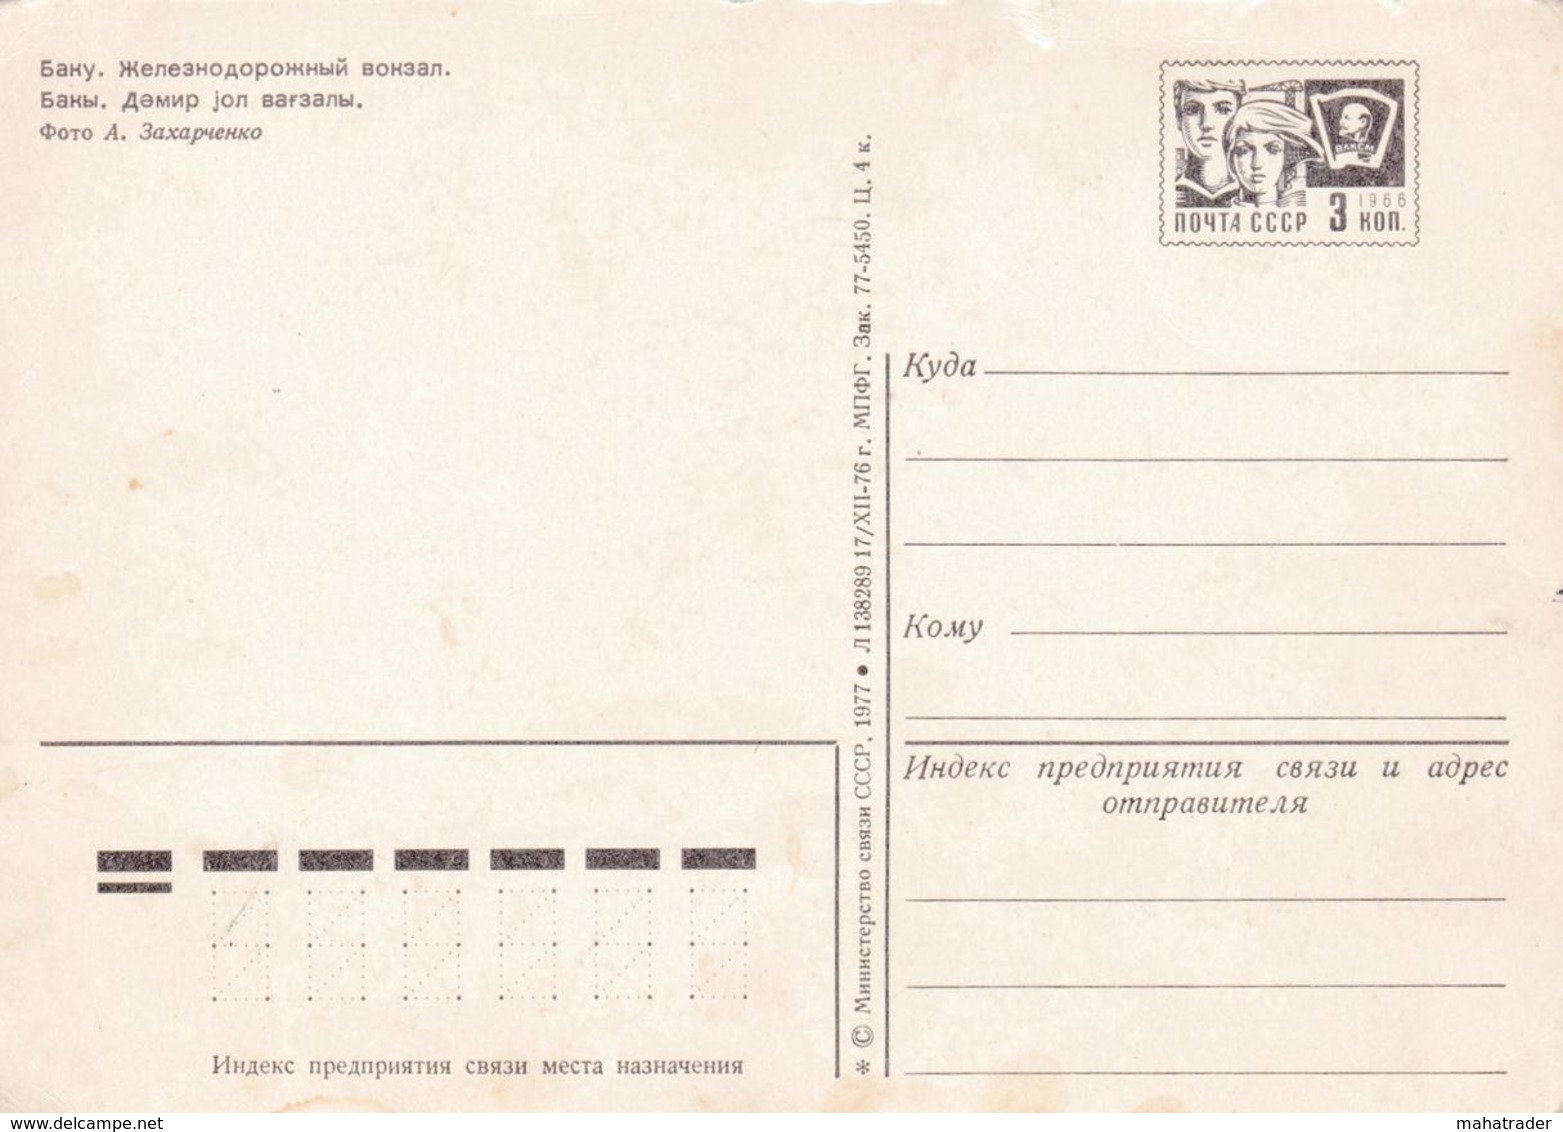 Azerbaijan - Baku - Railway Station - Printed 1977 / Stationery Stamp - Azerbeidzjan